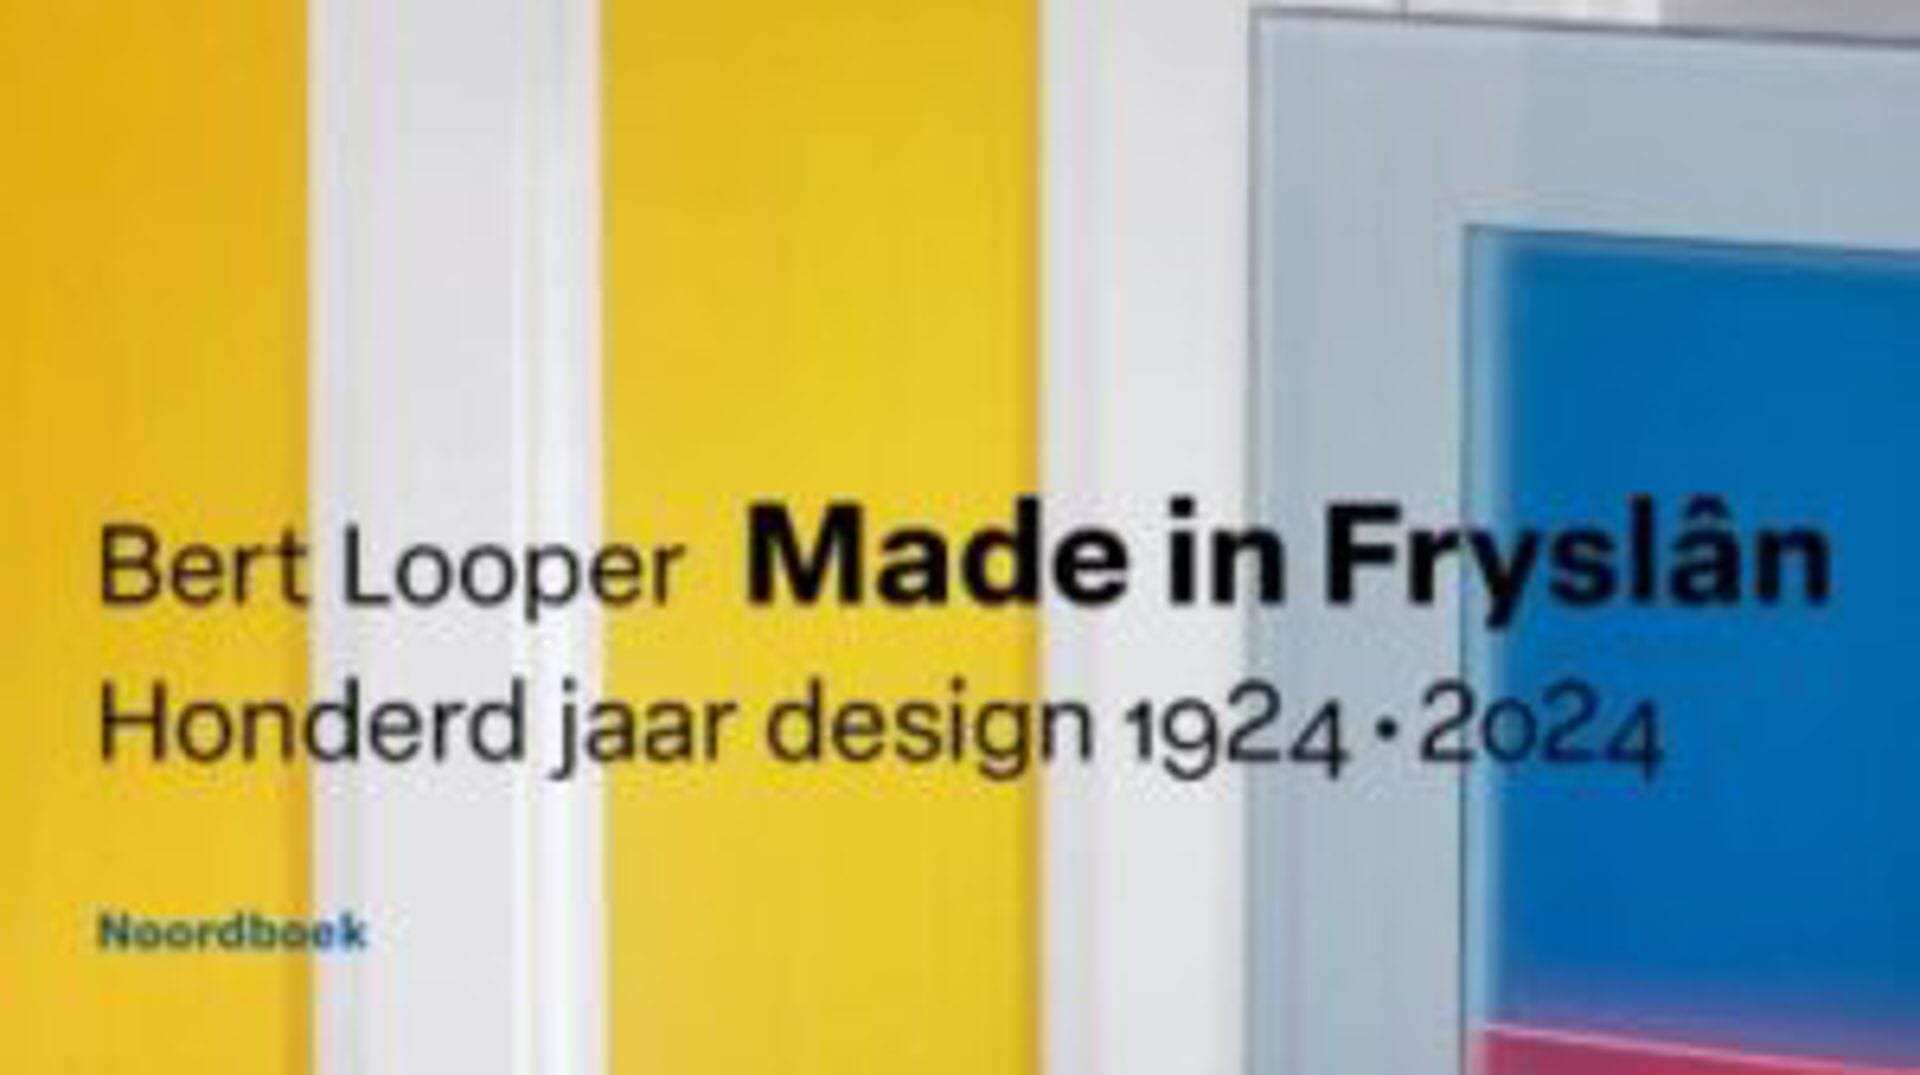 Made in Fryslân, boek over design van Bert Looper